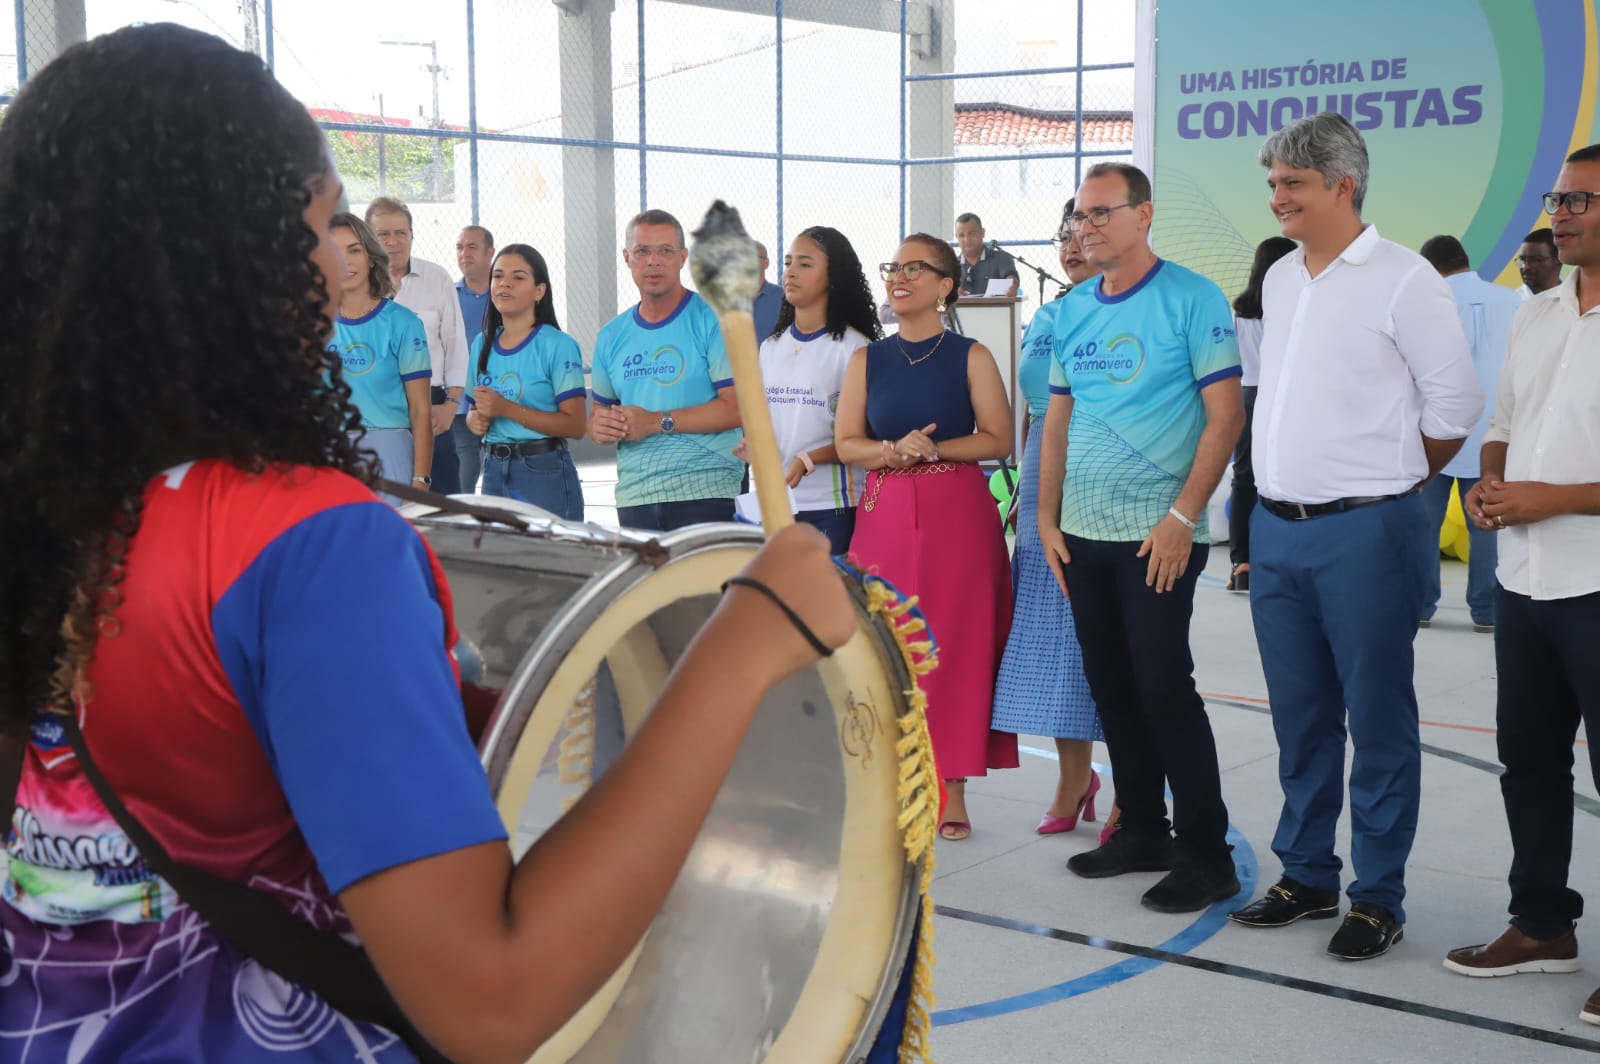 Governador lança 40ª edição dos Jogos da Primavera e entrega reforma do Colégio Estadual Prof. Joaquim Vieira Sobral